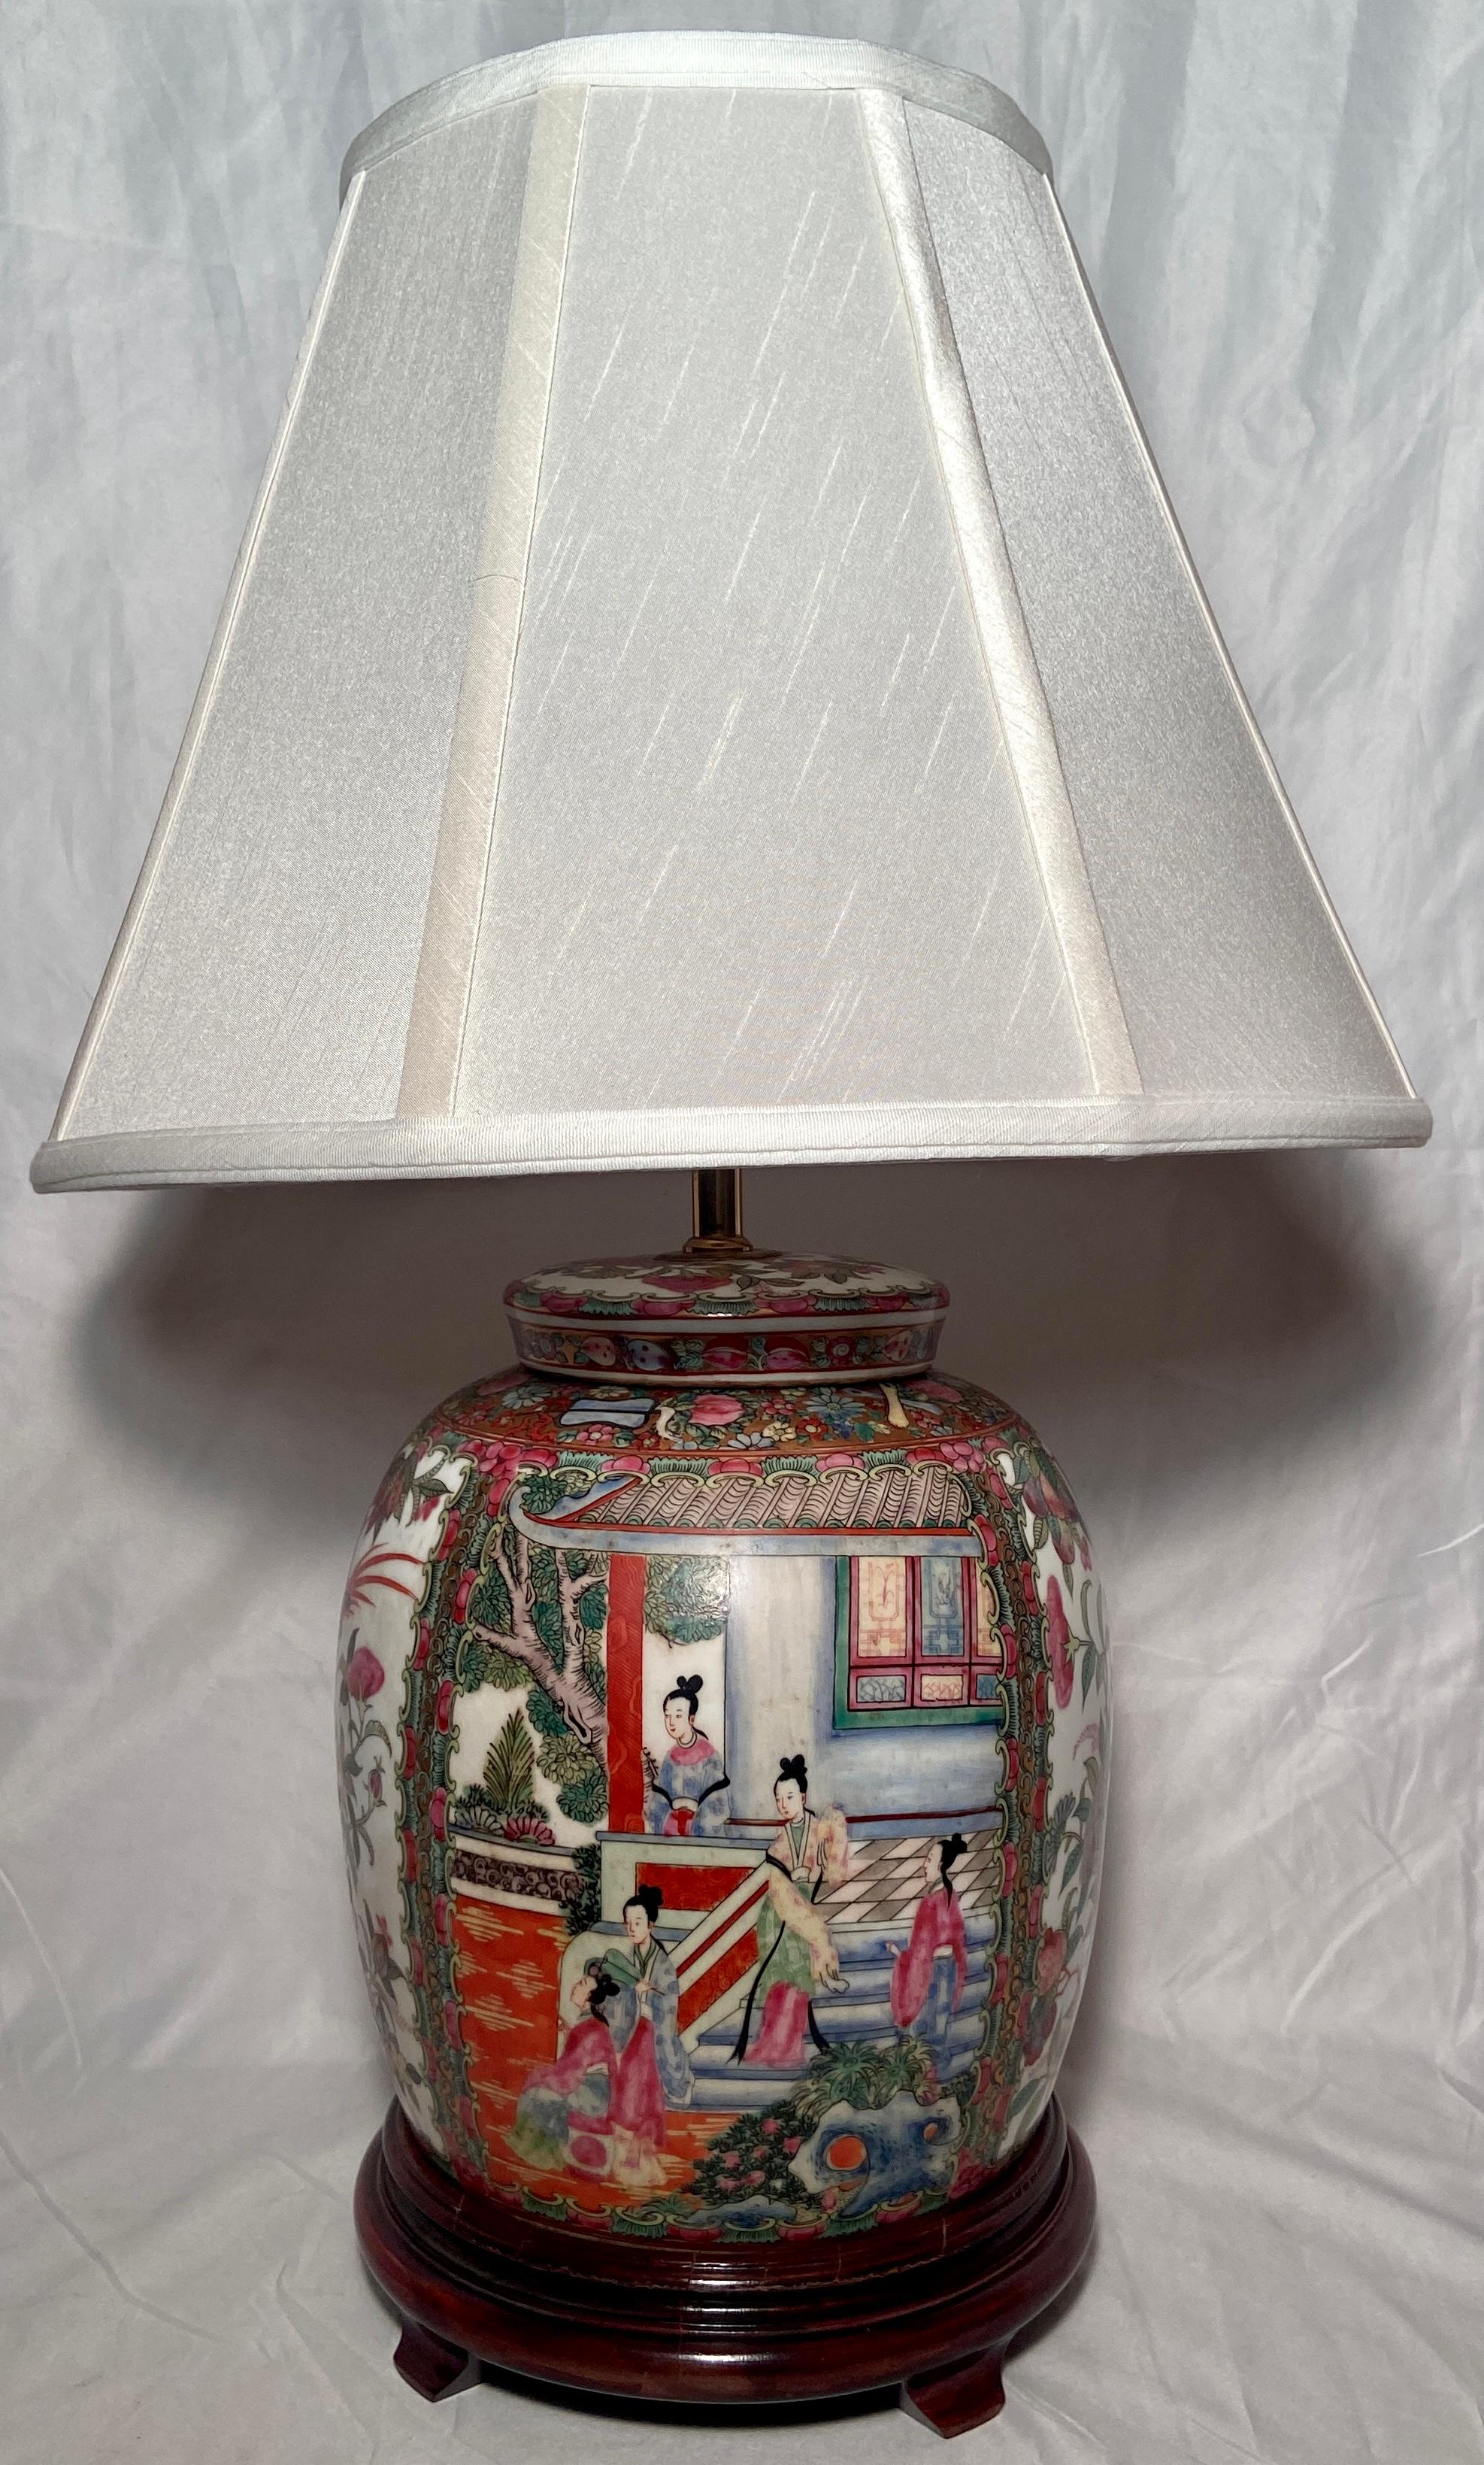 Paire de lampes chinoises anciennes en porcelaine Famille Rose, vers 1900-1920.